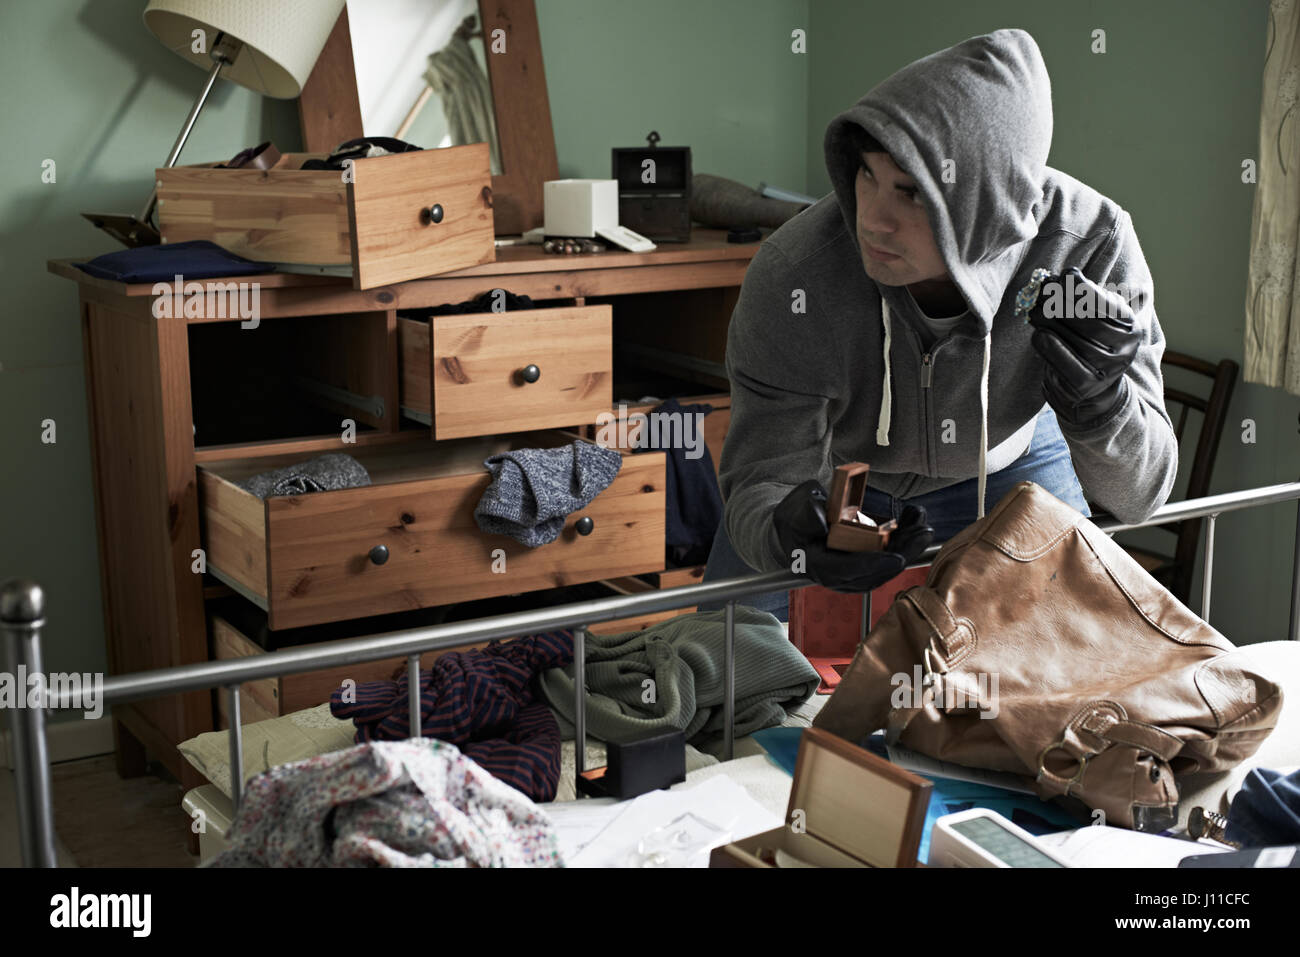 Ladrón de robar algunos objetos de la habitación durante la manguera se rompe en Foto de stock